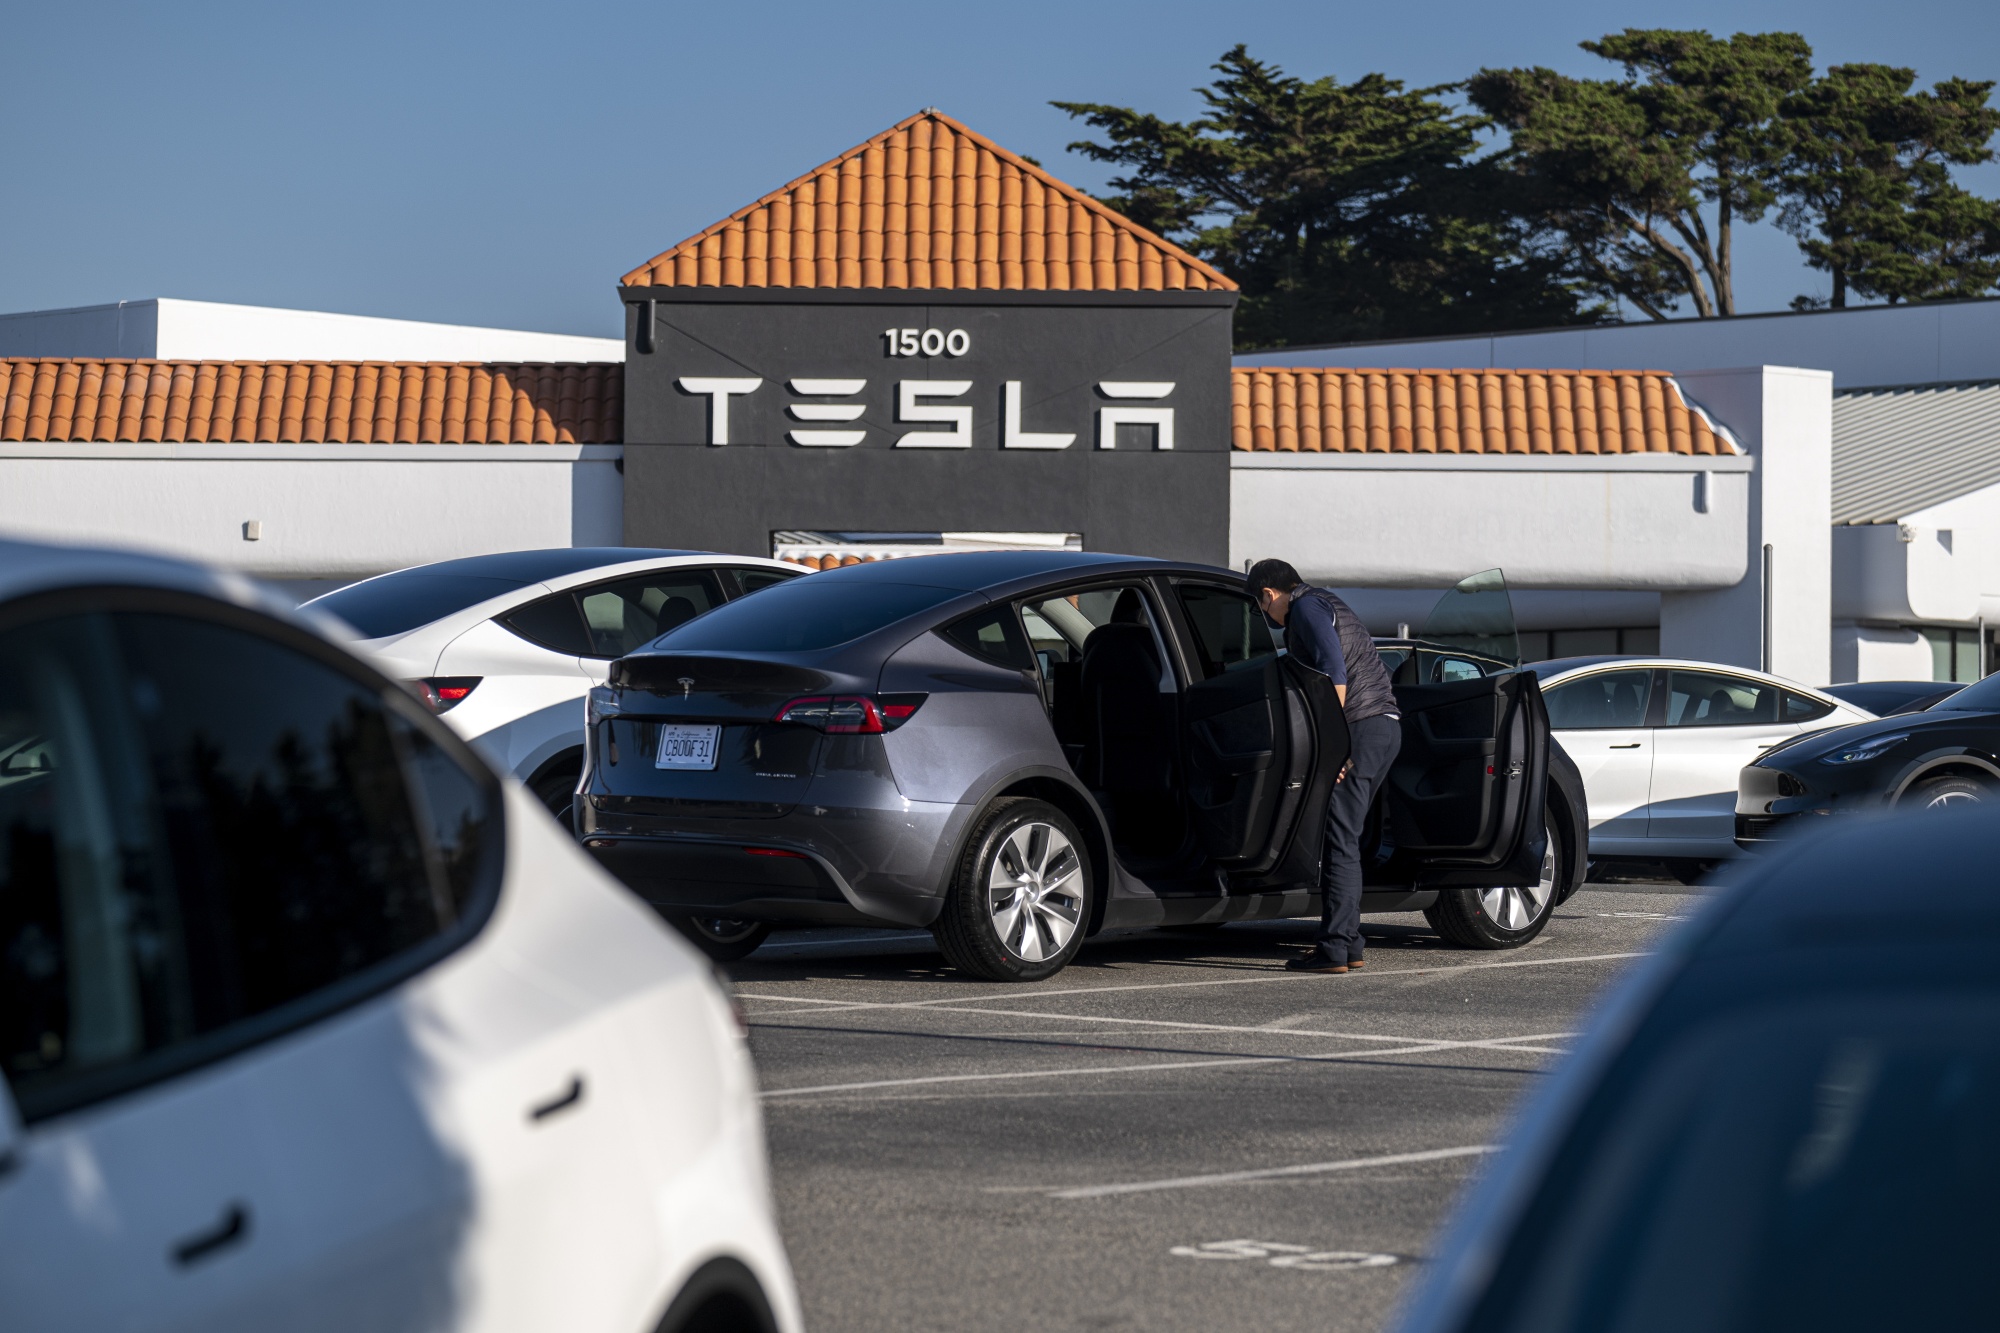 Mới đây, một chủ sở hữu chiếc Tesla Model 3 ở California đã kiện nhà sản xuất xe điện trong một vụ kiện tập thể được đề xuất về việc xe ô tô đột ngột dừng lại, vì chướng ngại vật không tồn tại, gọi đó là &quot;cơn ác mộng đáng sợ và nguy hiểm&quot;. Ảnh: @AFP.